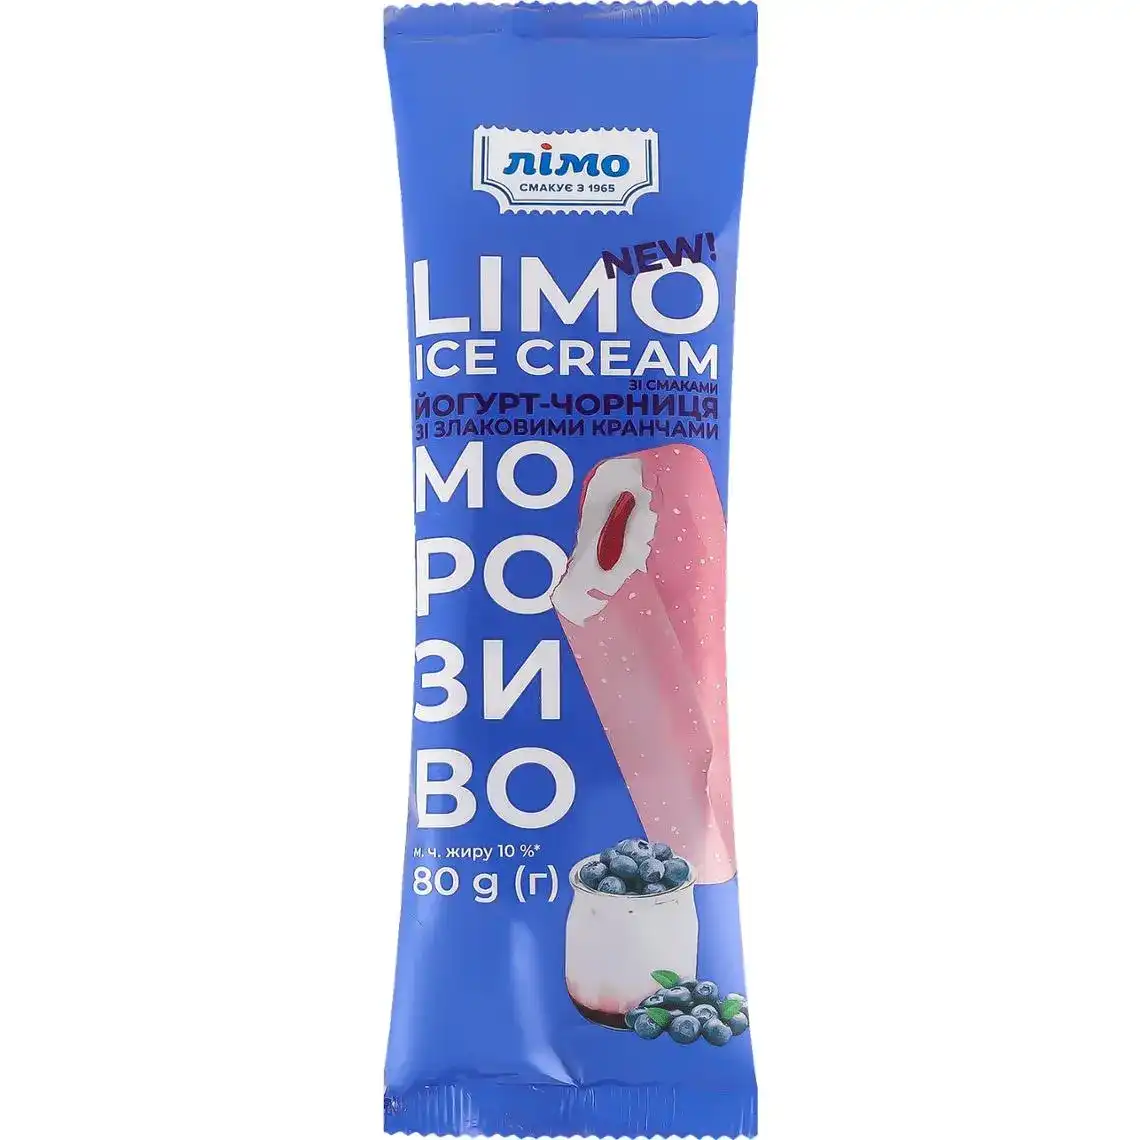 Фото 1 - Мороженое Лімо Йогурт-черника со злаковыми кранчами 80 г